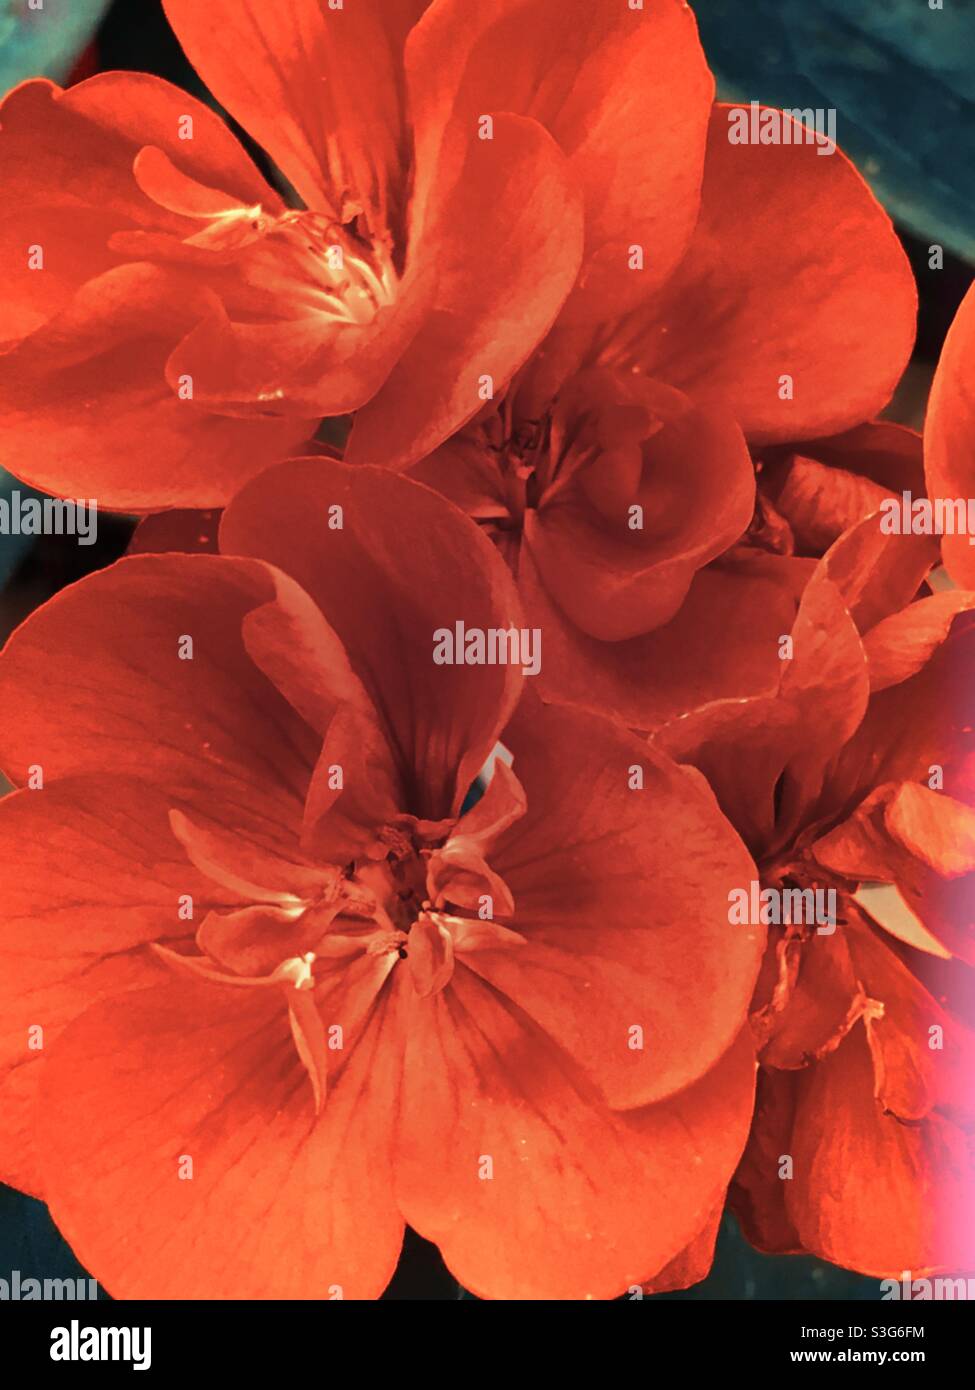 Red geranium flowers (pelargonium) Stock Photo